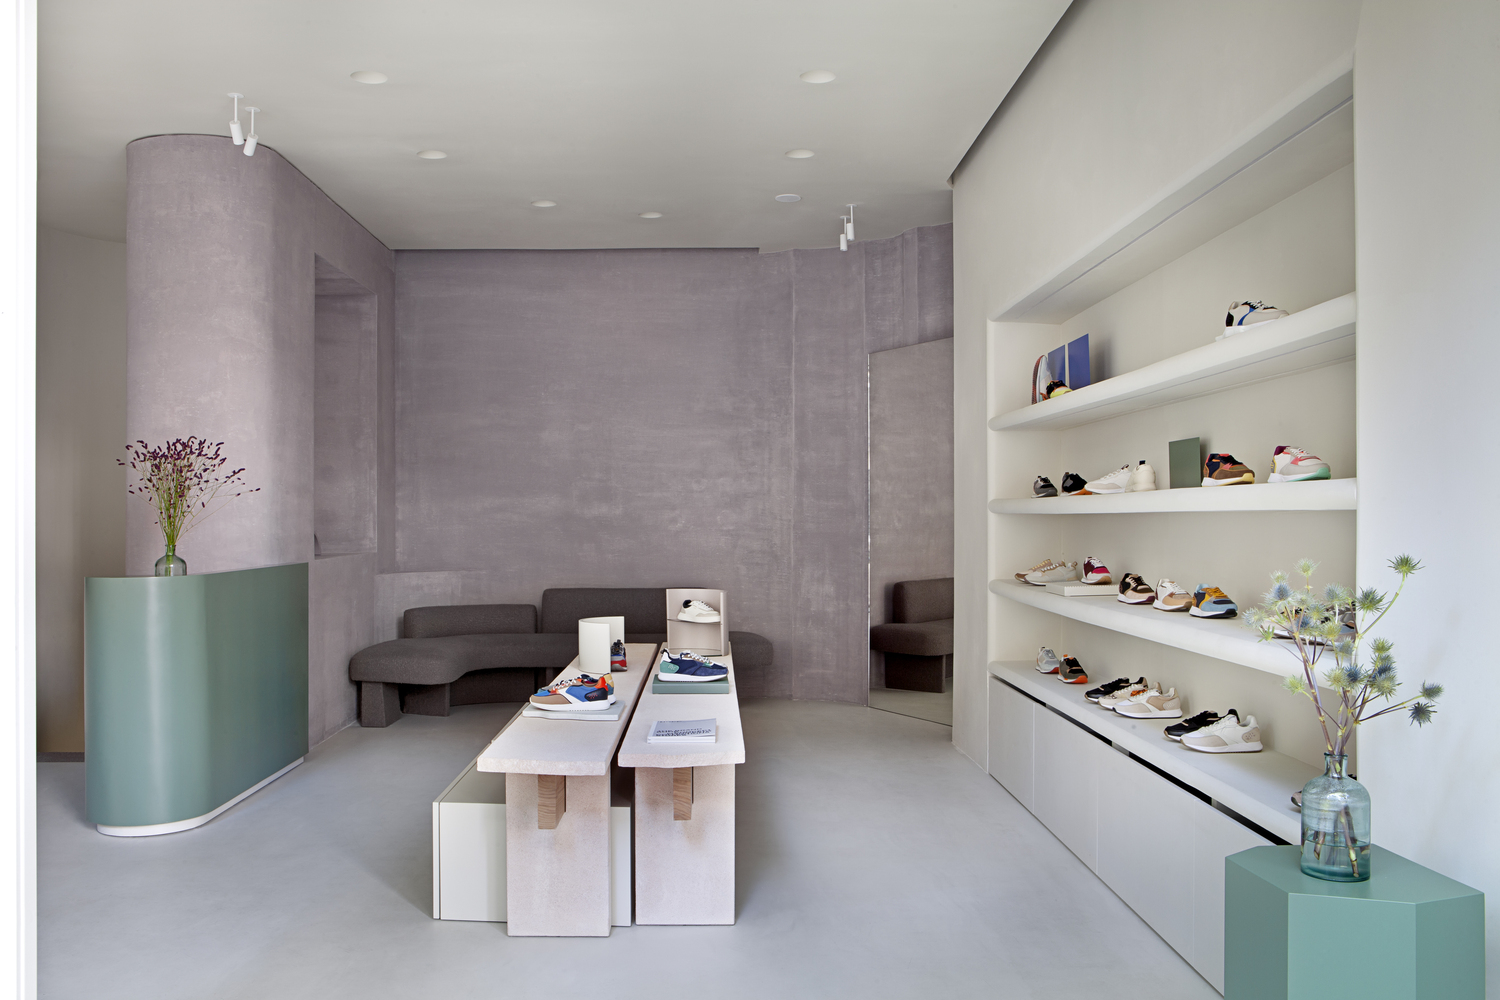 طراحی فروشگاه - فروشگاه کفش - چگونه فروشگاه طراحی کنم - طراحی کفش فروشی - معماری فروشگاه